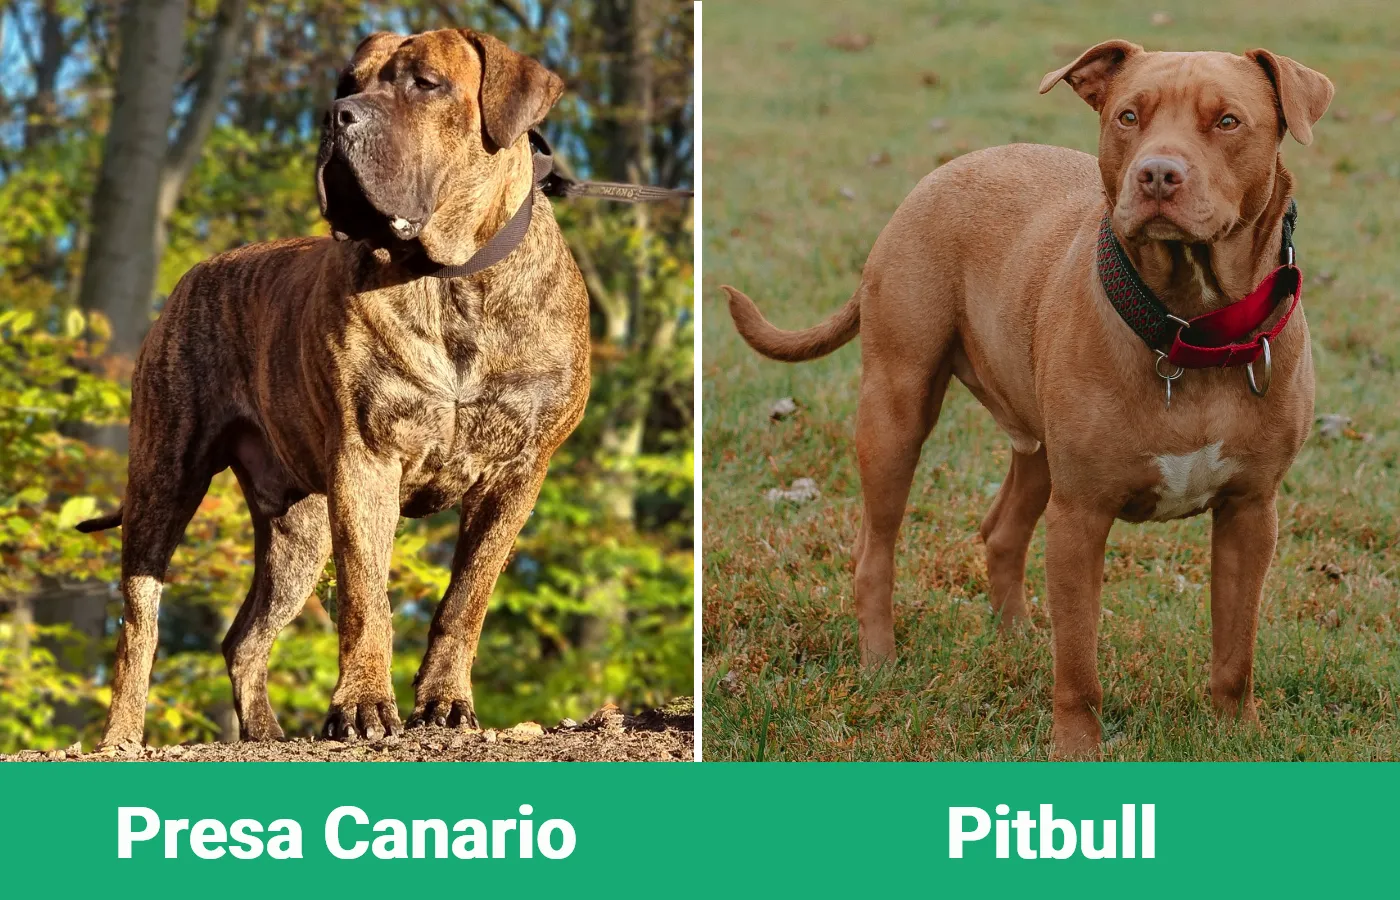 Presa Canario vs Pitbull - Visual Differences